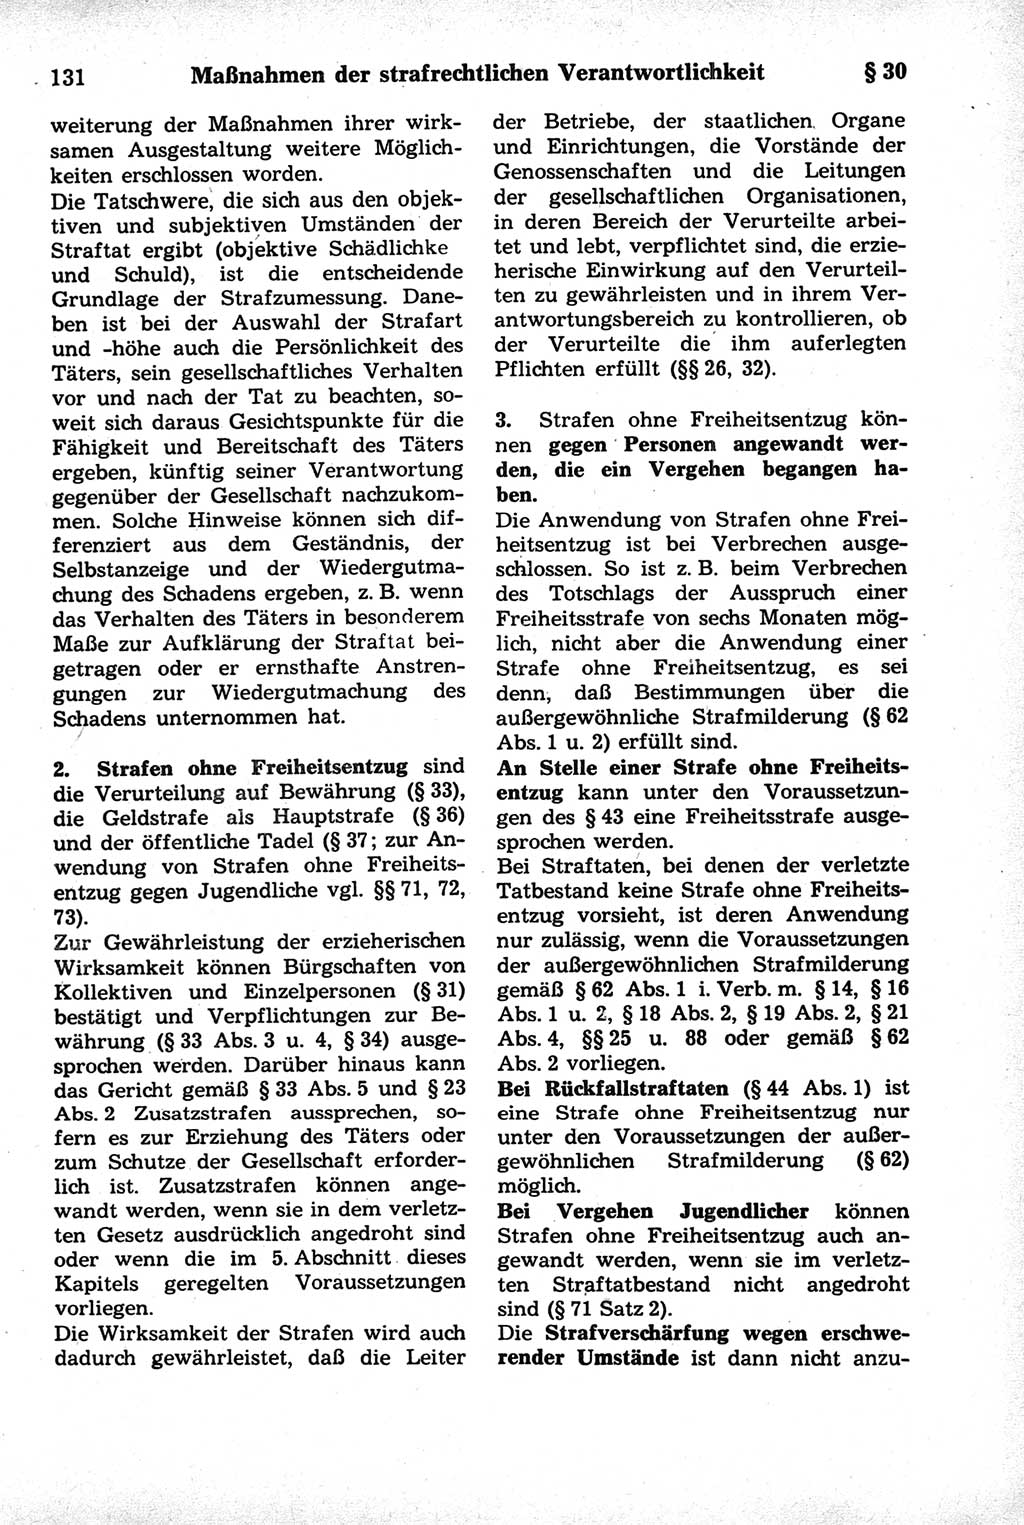 Strafrecht der Deutschen Demokratischen Republik (DDR), Kommentar zum Strafgesetzbuch (StGB) 1981, Seite 131 (Strafr. DDR Komm. StGB 1981, S. 131)